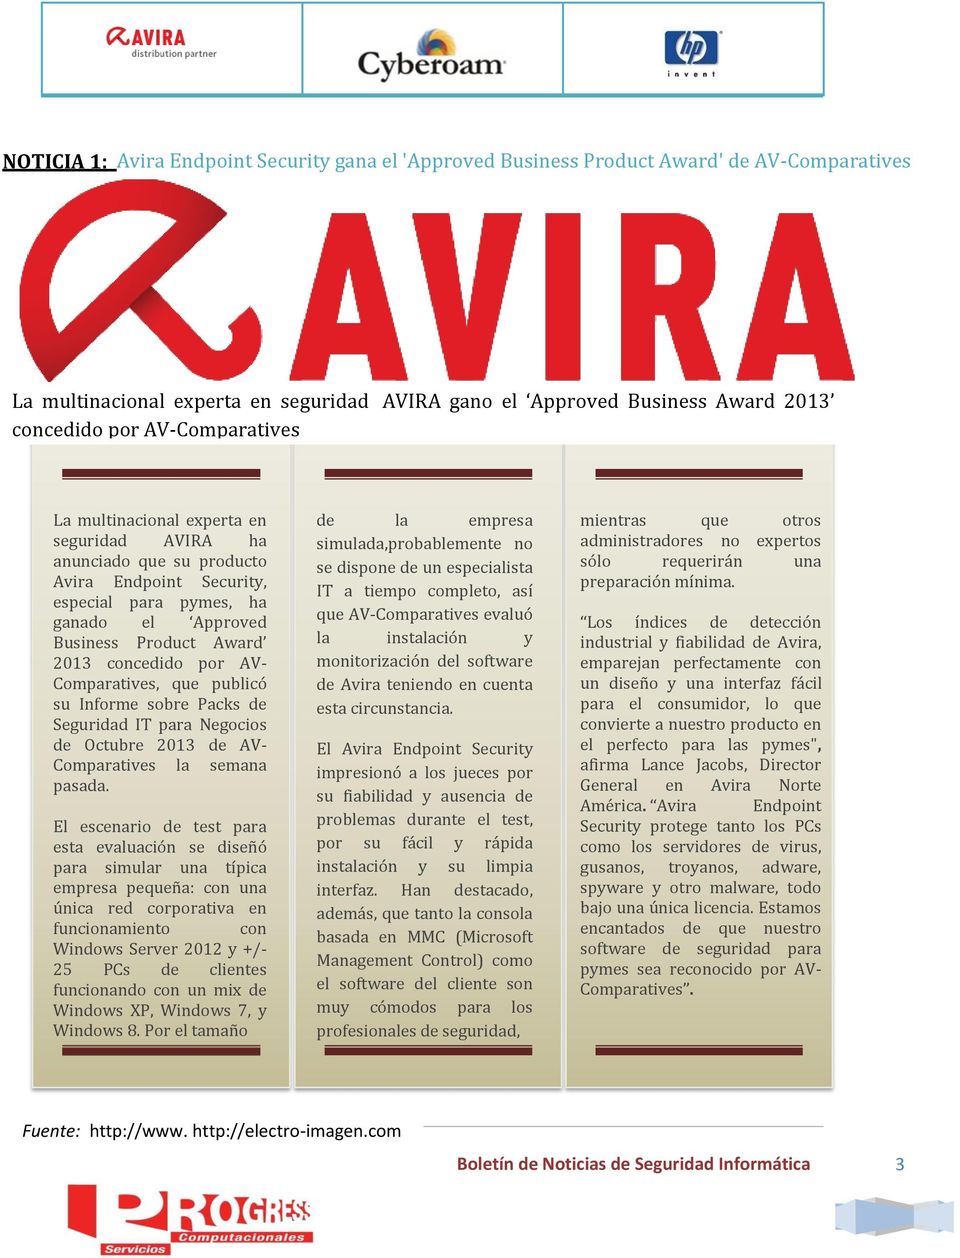 AV- Comparatives, que publicó su Informe sobre Packs de Seguridad IT para Negocios de Octubre 2013 de AV- Comparatives la semana pasada.